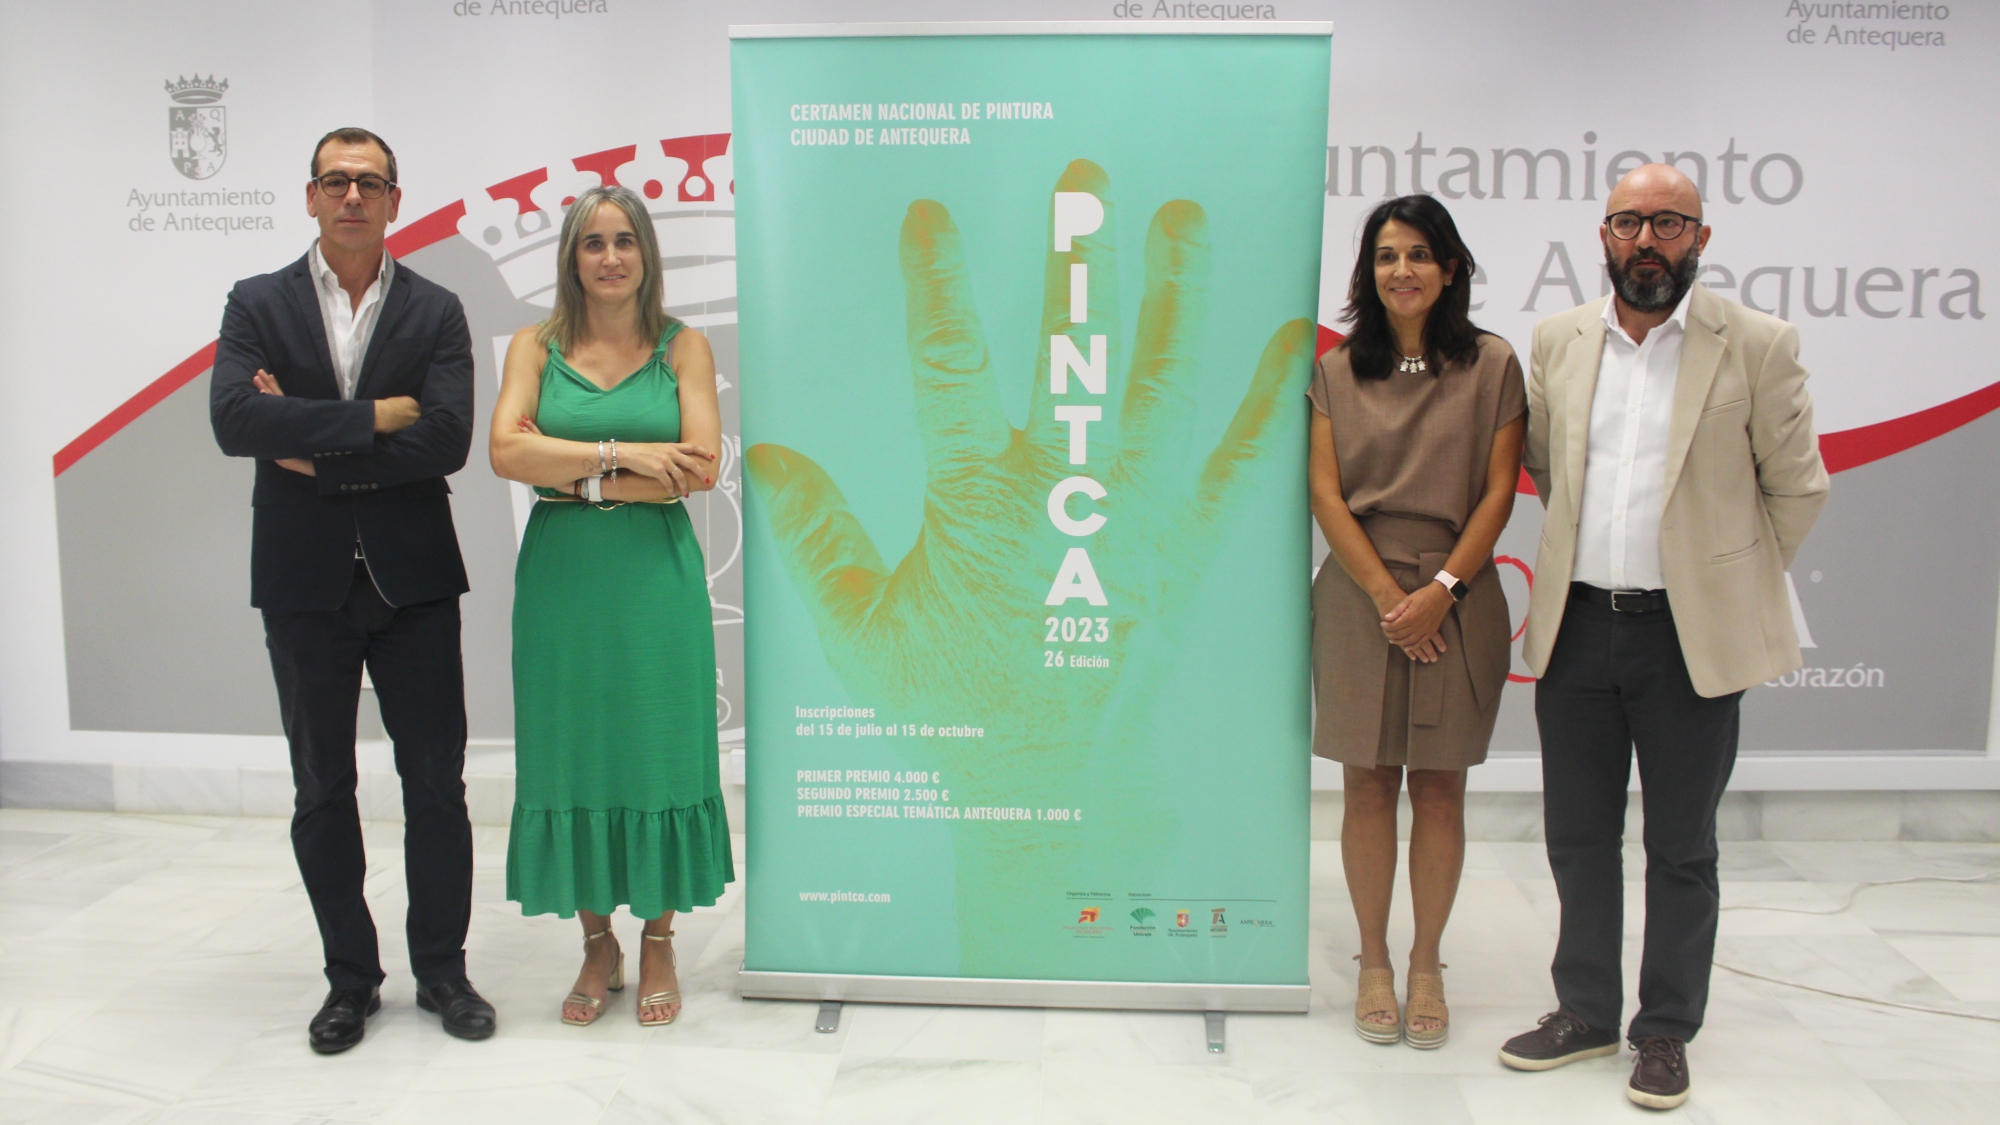 Presentación del XXVI Certamen Nacional de Pintura Ciudad de Antequera (julio 2023)